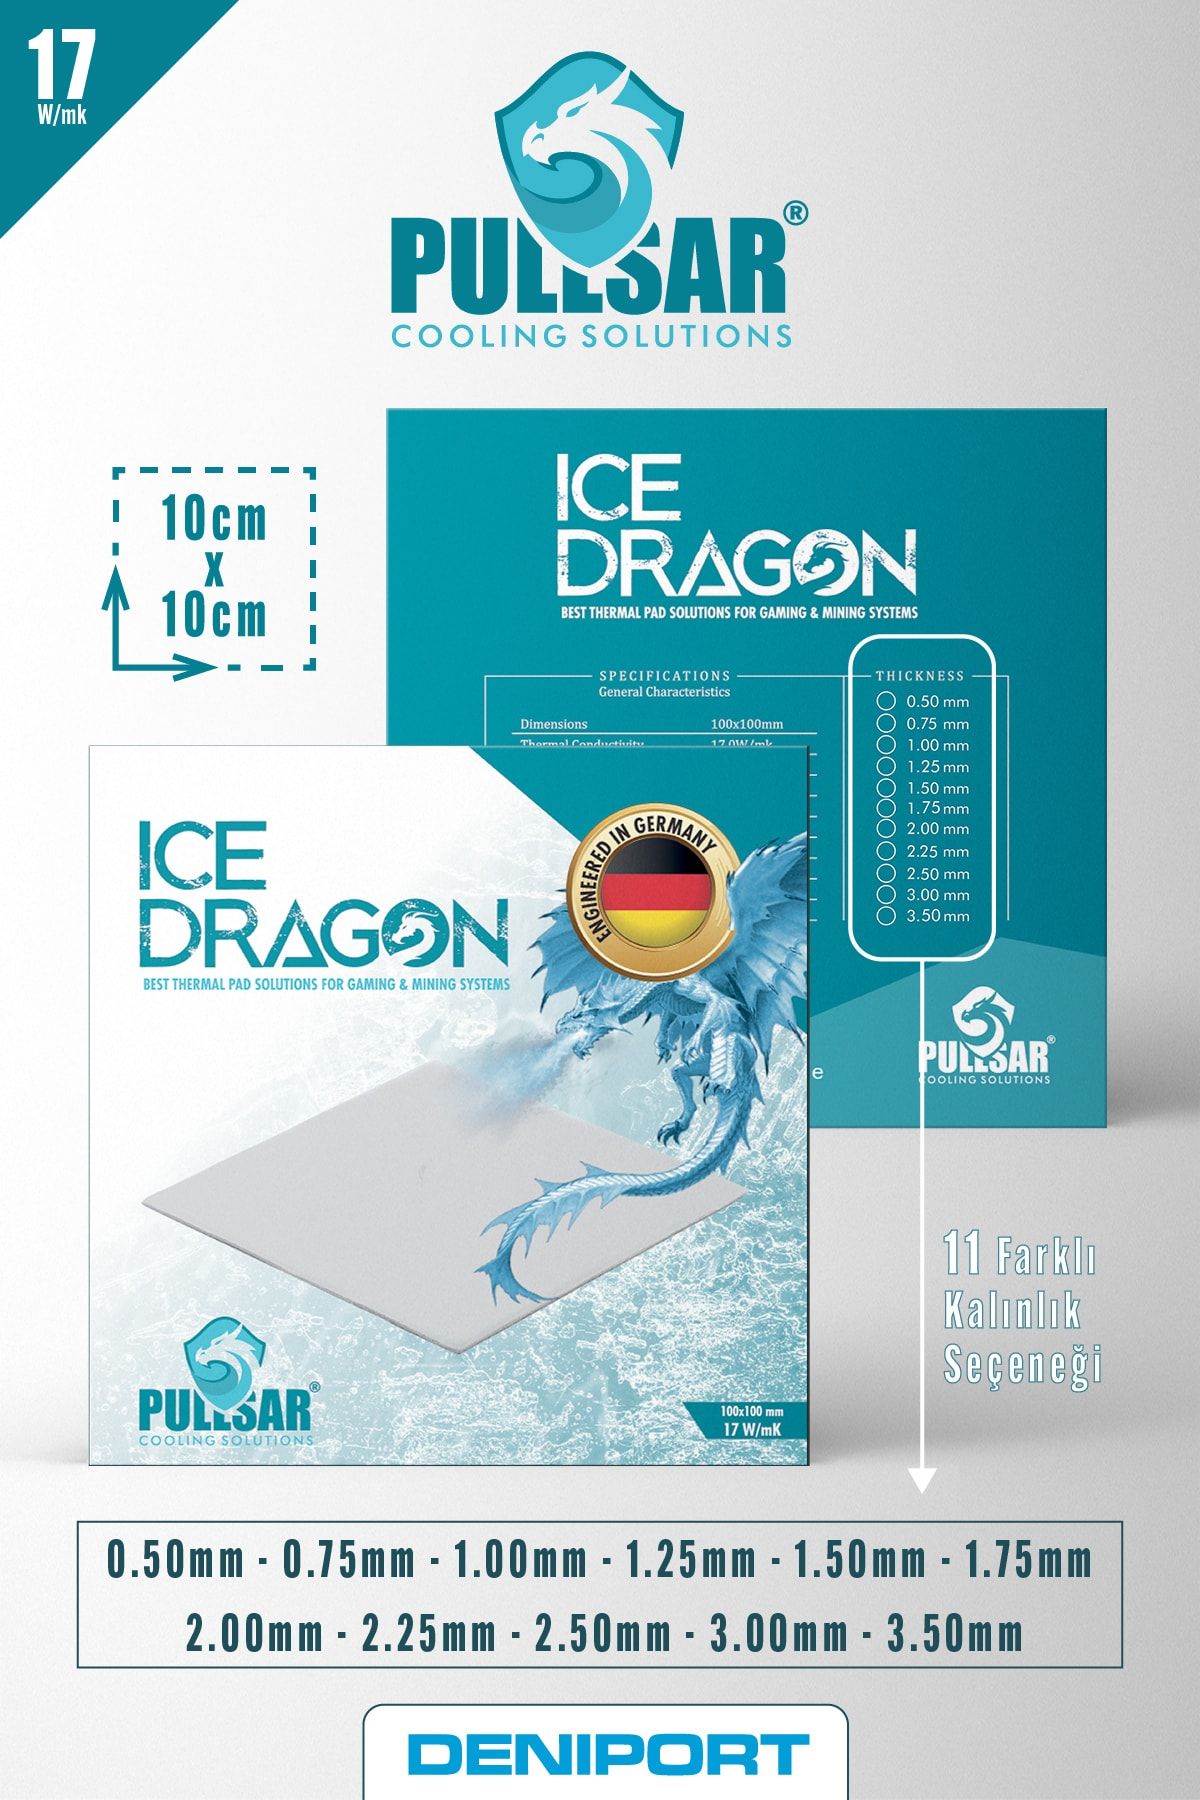 Pullsar Ice Dragon 17w/mk | 10cmx10cm | 2.0mm | Thermal Pad - Termal Ped